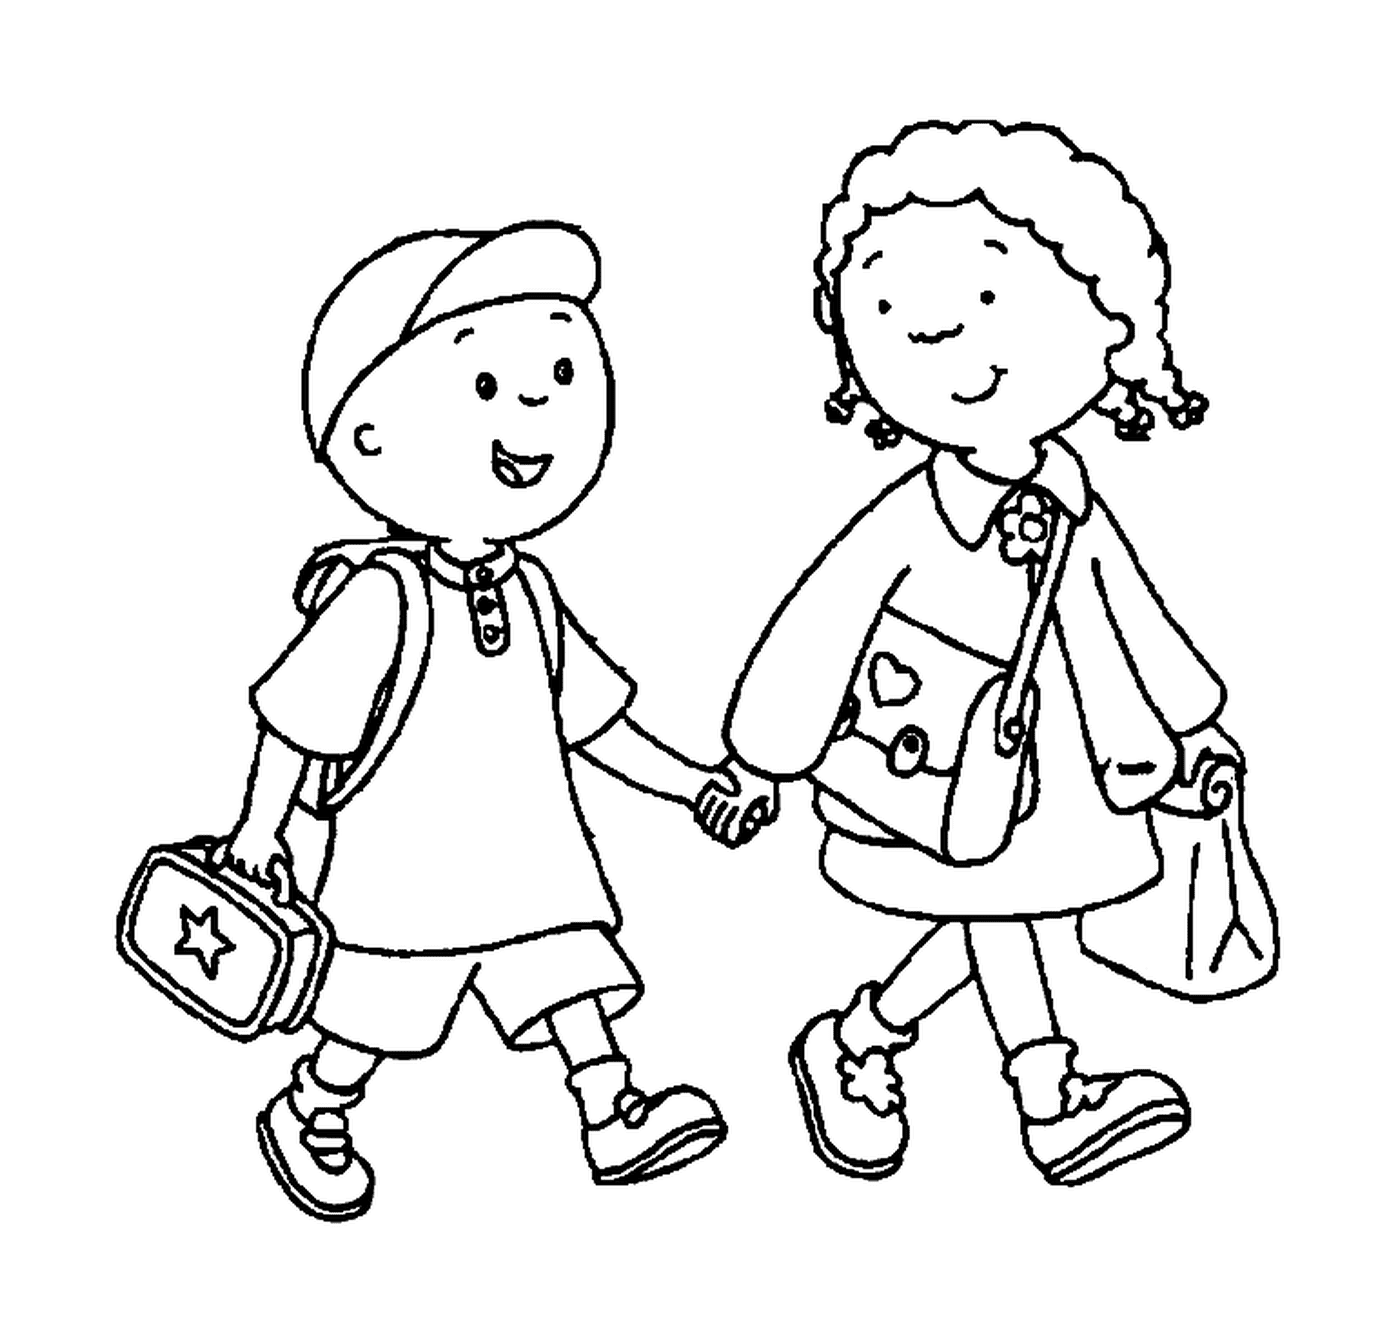  Брат и сестра держатся за руки, чтобы пойти в школу 